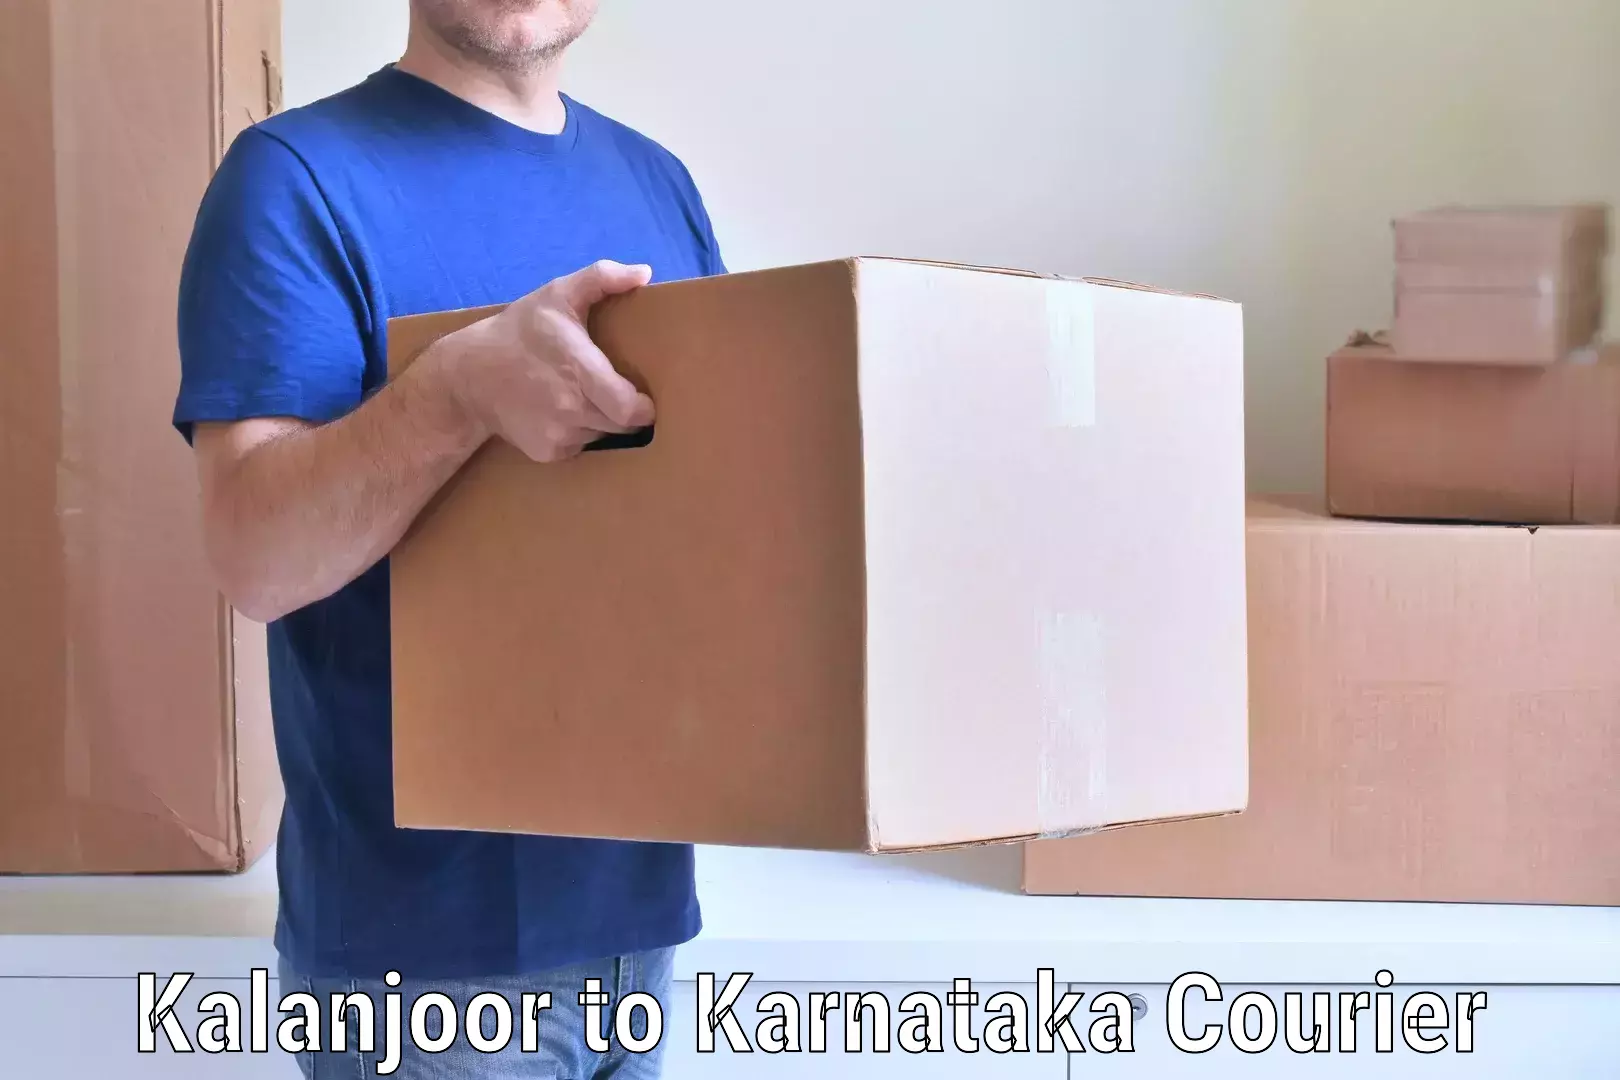 Household goods transport service Kalanjoor to Saundatti Yallamma